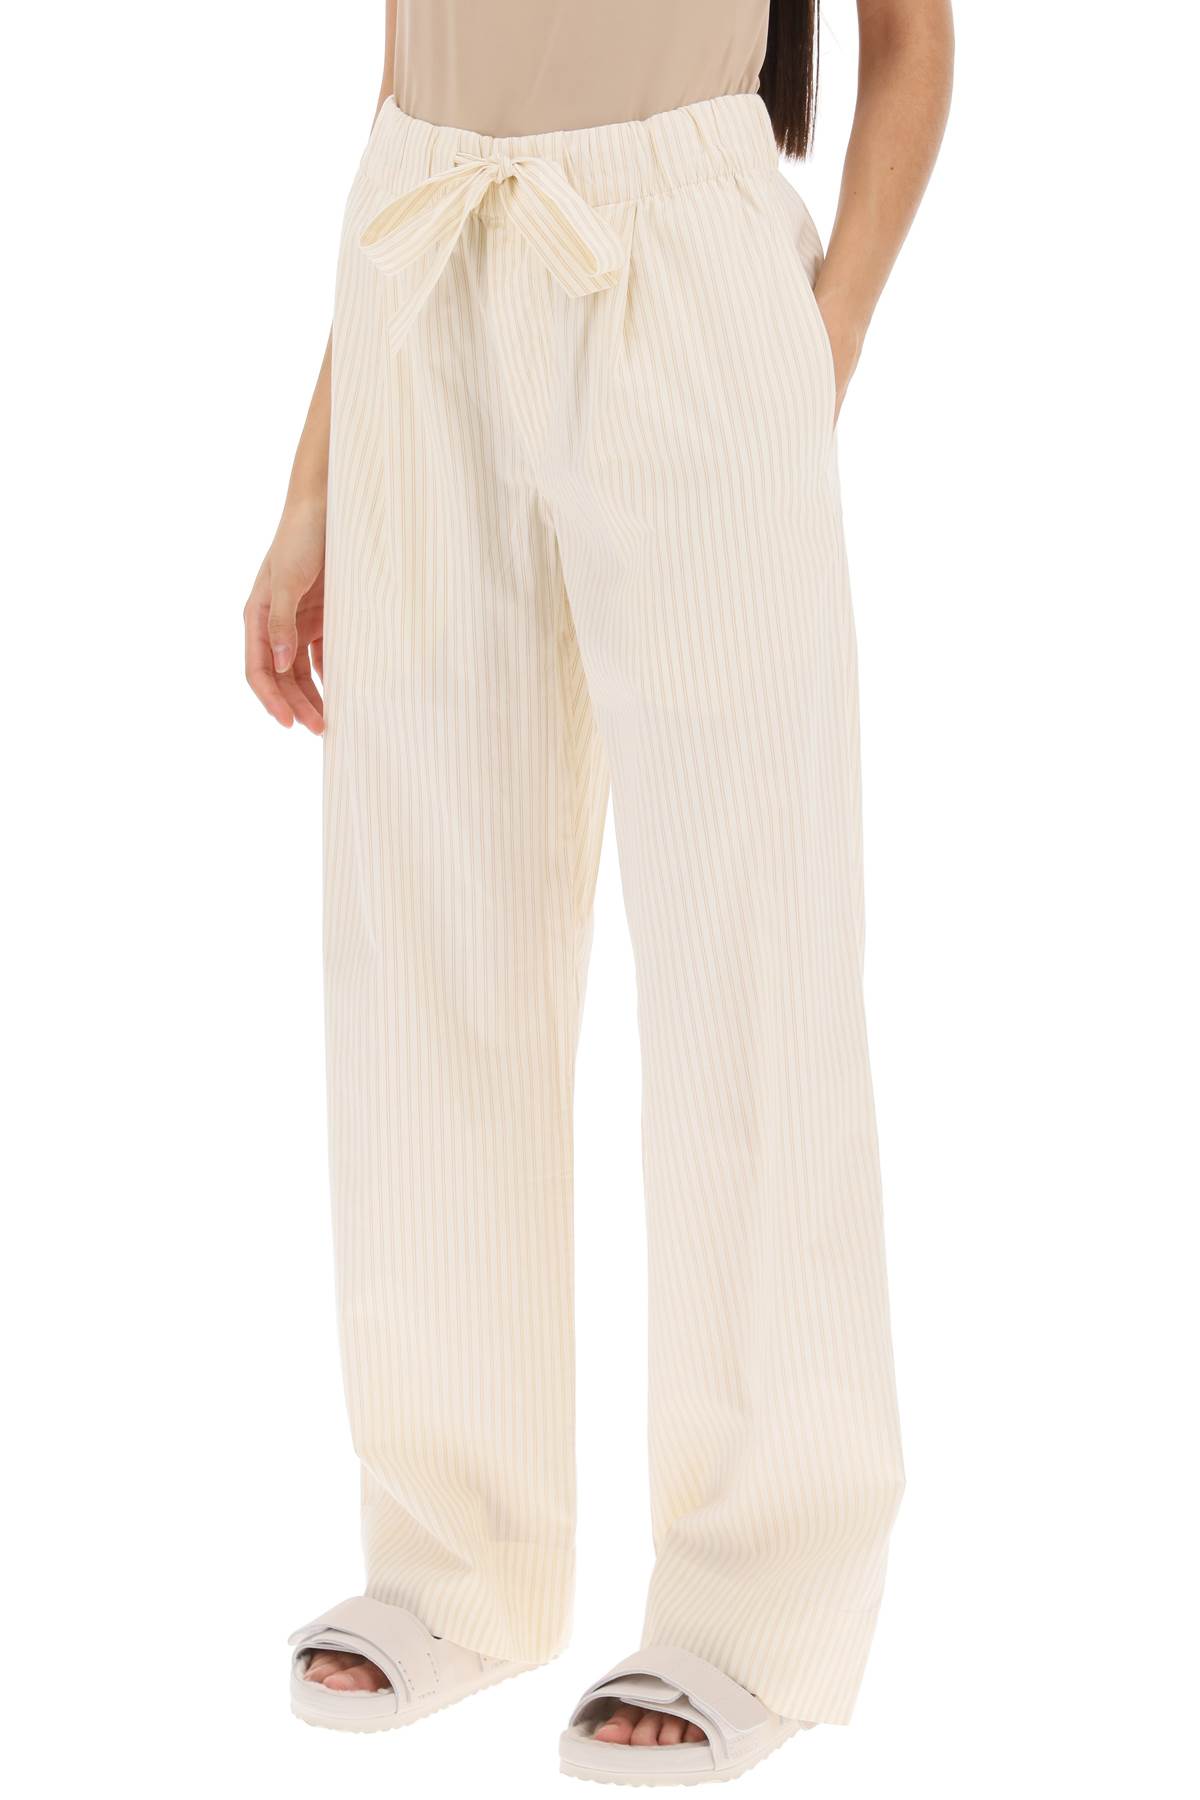 Shop Birkenstock Pajama Pants In Striped Organic Poplin In Wheat Stripes (beige)